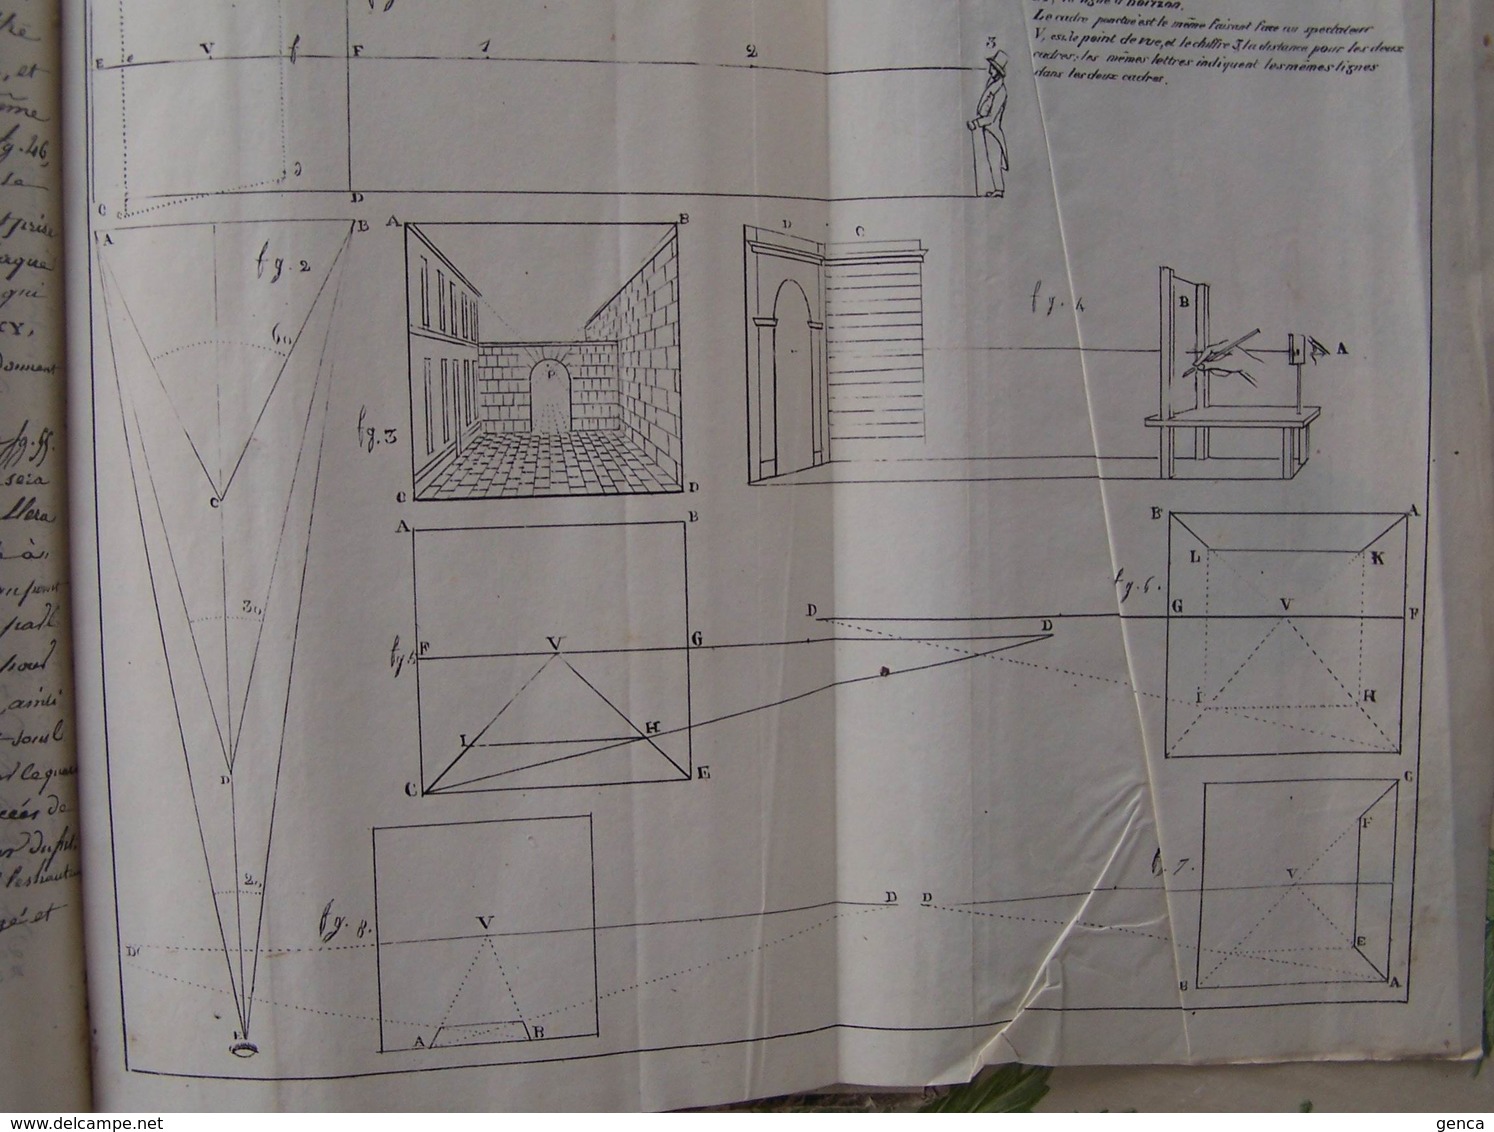 Livre manuscrit , Principes dessin d'architecture par Navlet ,professeur Ecole Normale Supérieure de Châlons sur Marne